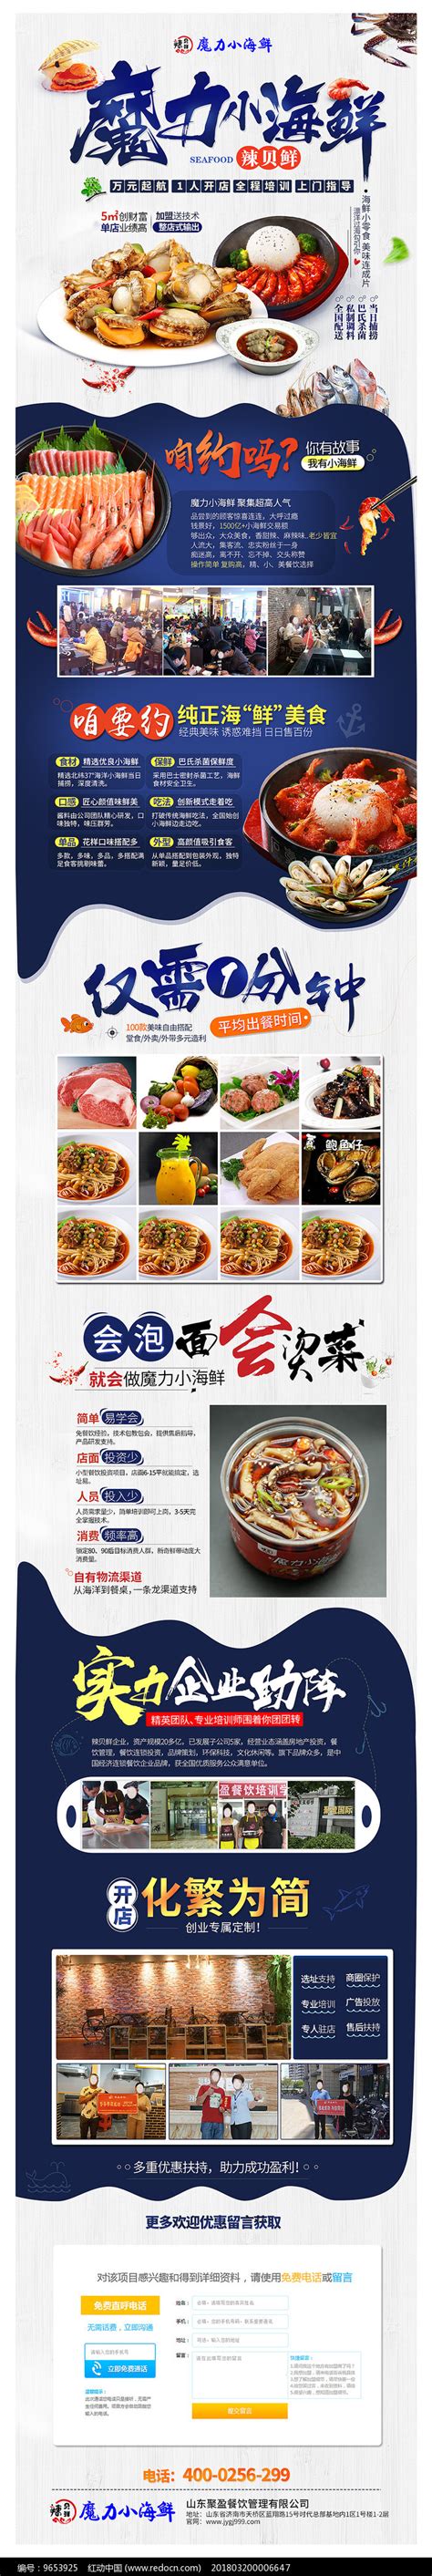 蓝色创意海鲜餐饮招商页面图片下载_红动中国